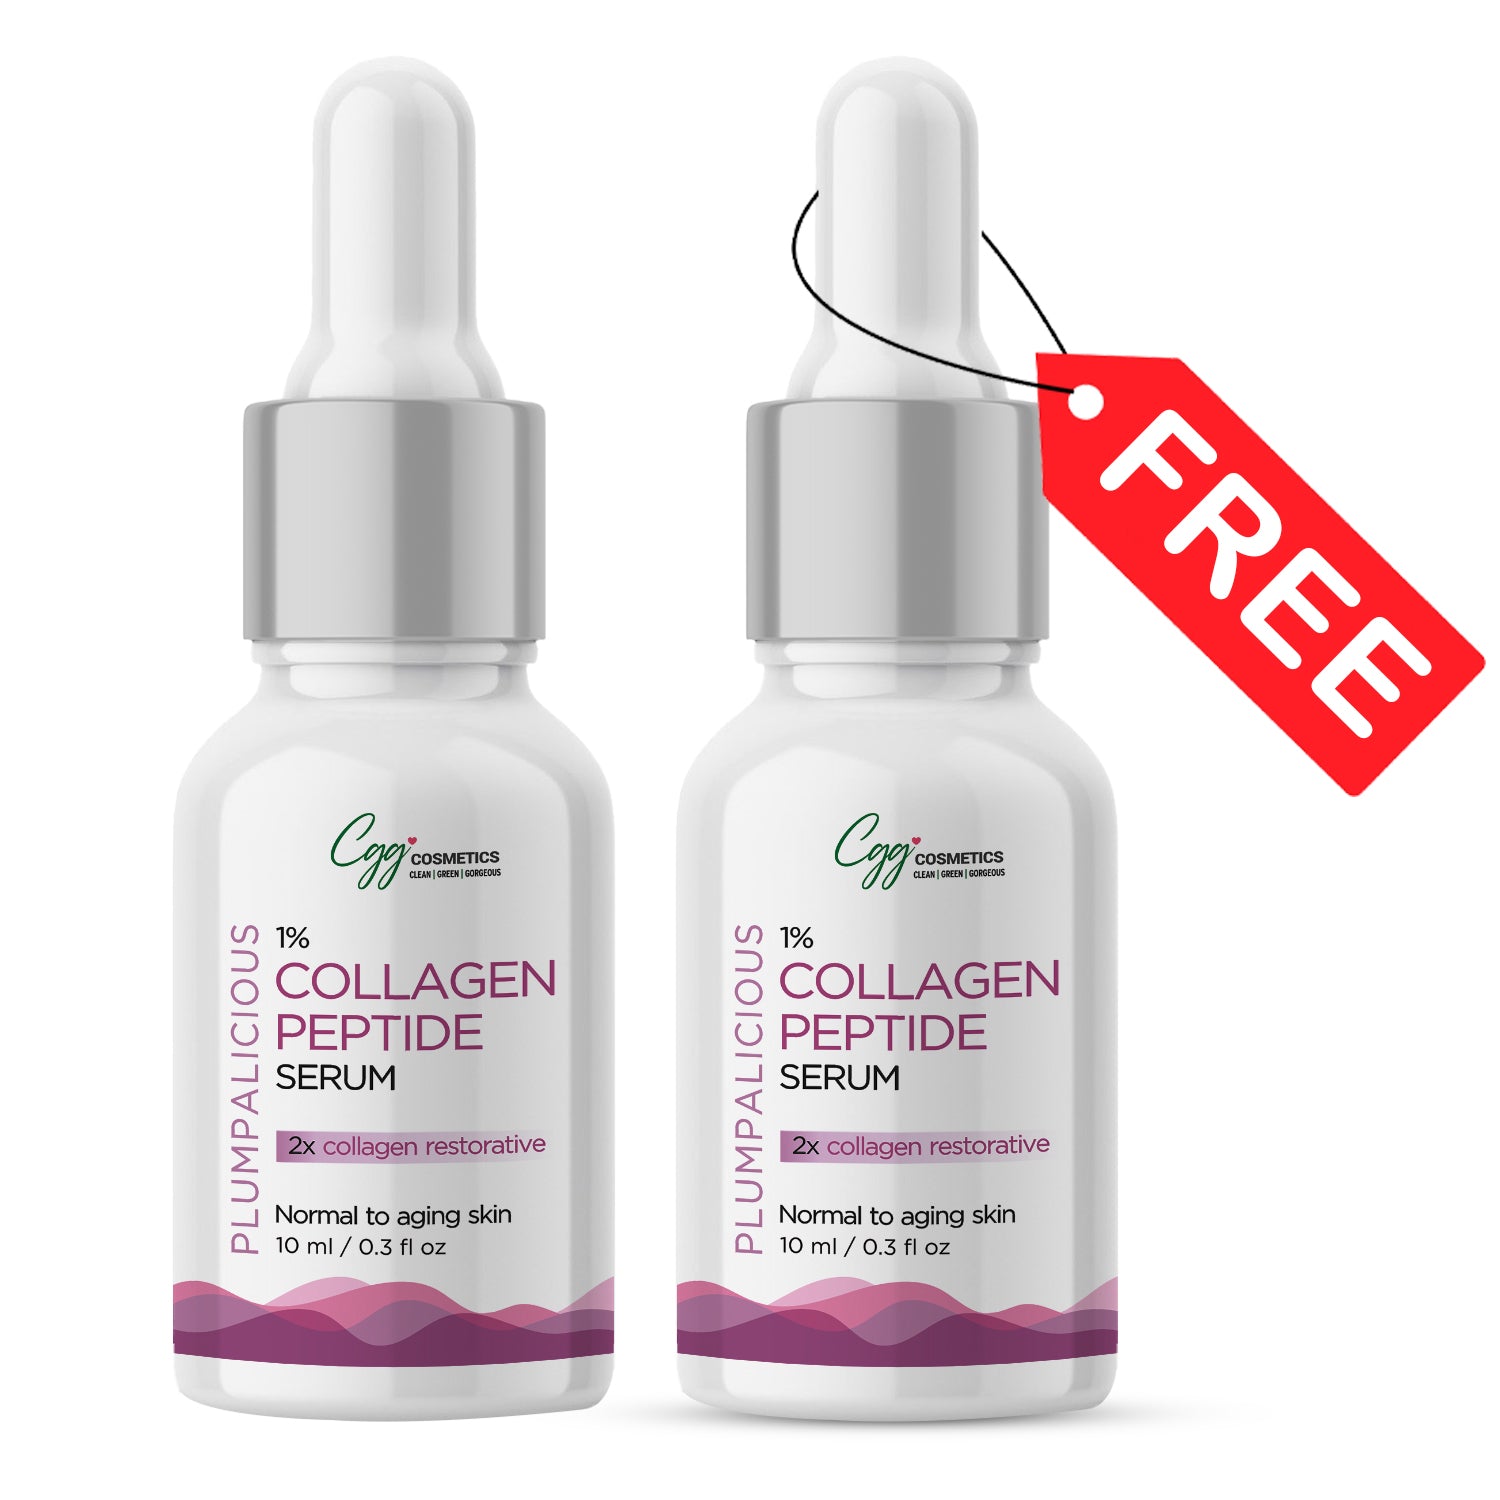 CGG Cosmetics 1% Collagen Serum 10ml & GET FREE 10ml 1% Collagen Serum - 2X Collagen Restorative